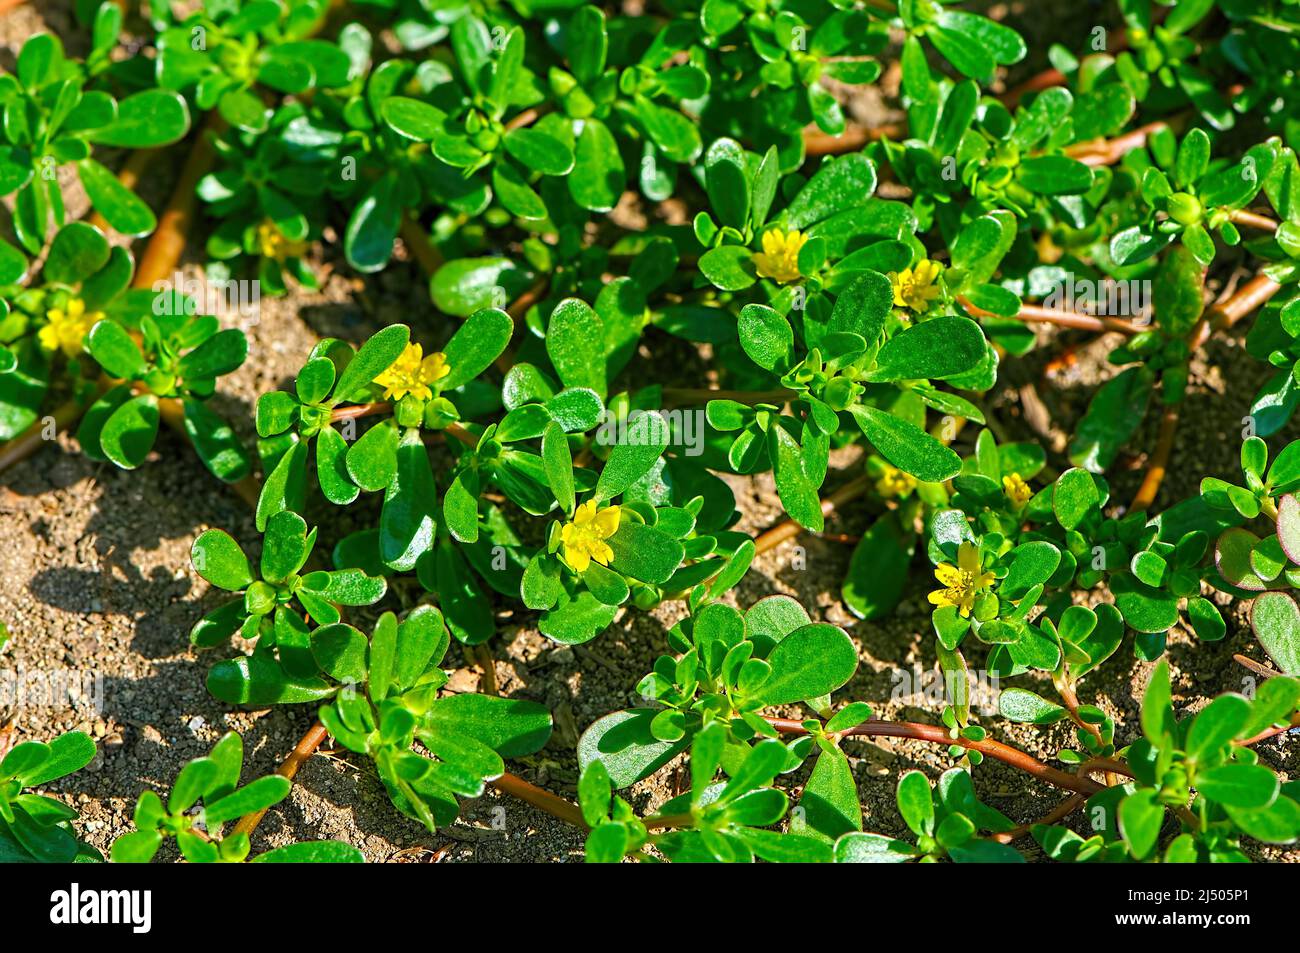 El Herb Purslane común (Portulaca oleracea) a menudo se considera una maleza. Foto de stock